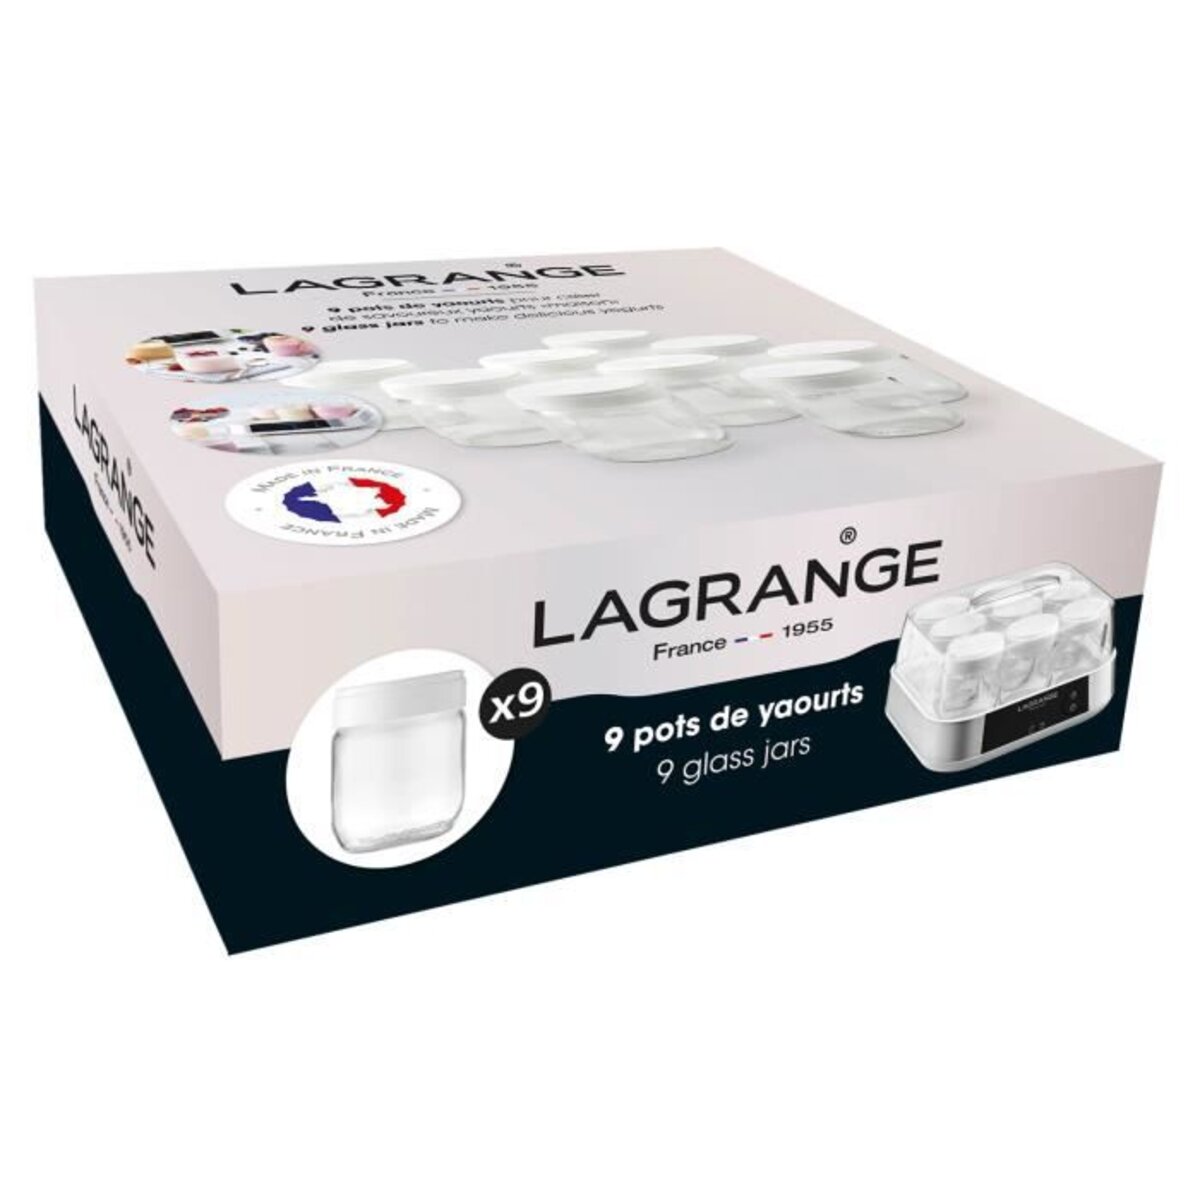 LAGRANGE Lot de 9 pots yaourtiere - 430301 - 185 g - Transparent et blanc -  La Poste